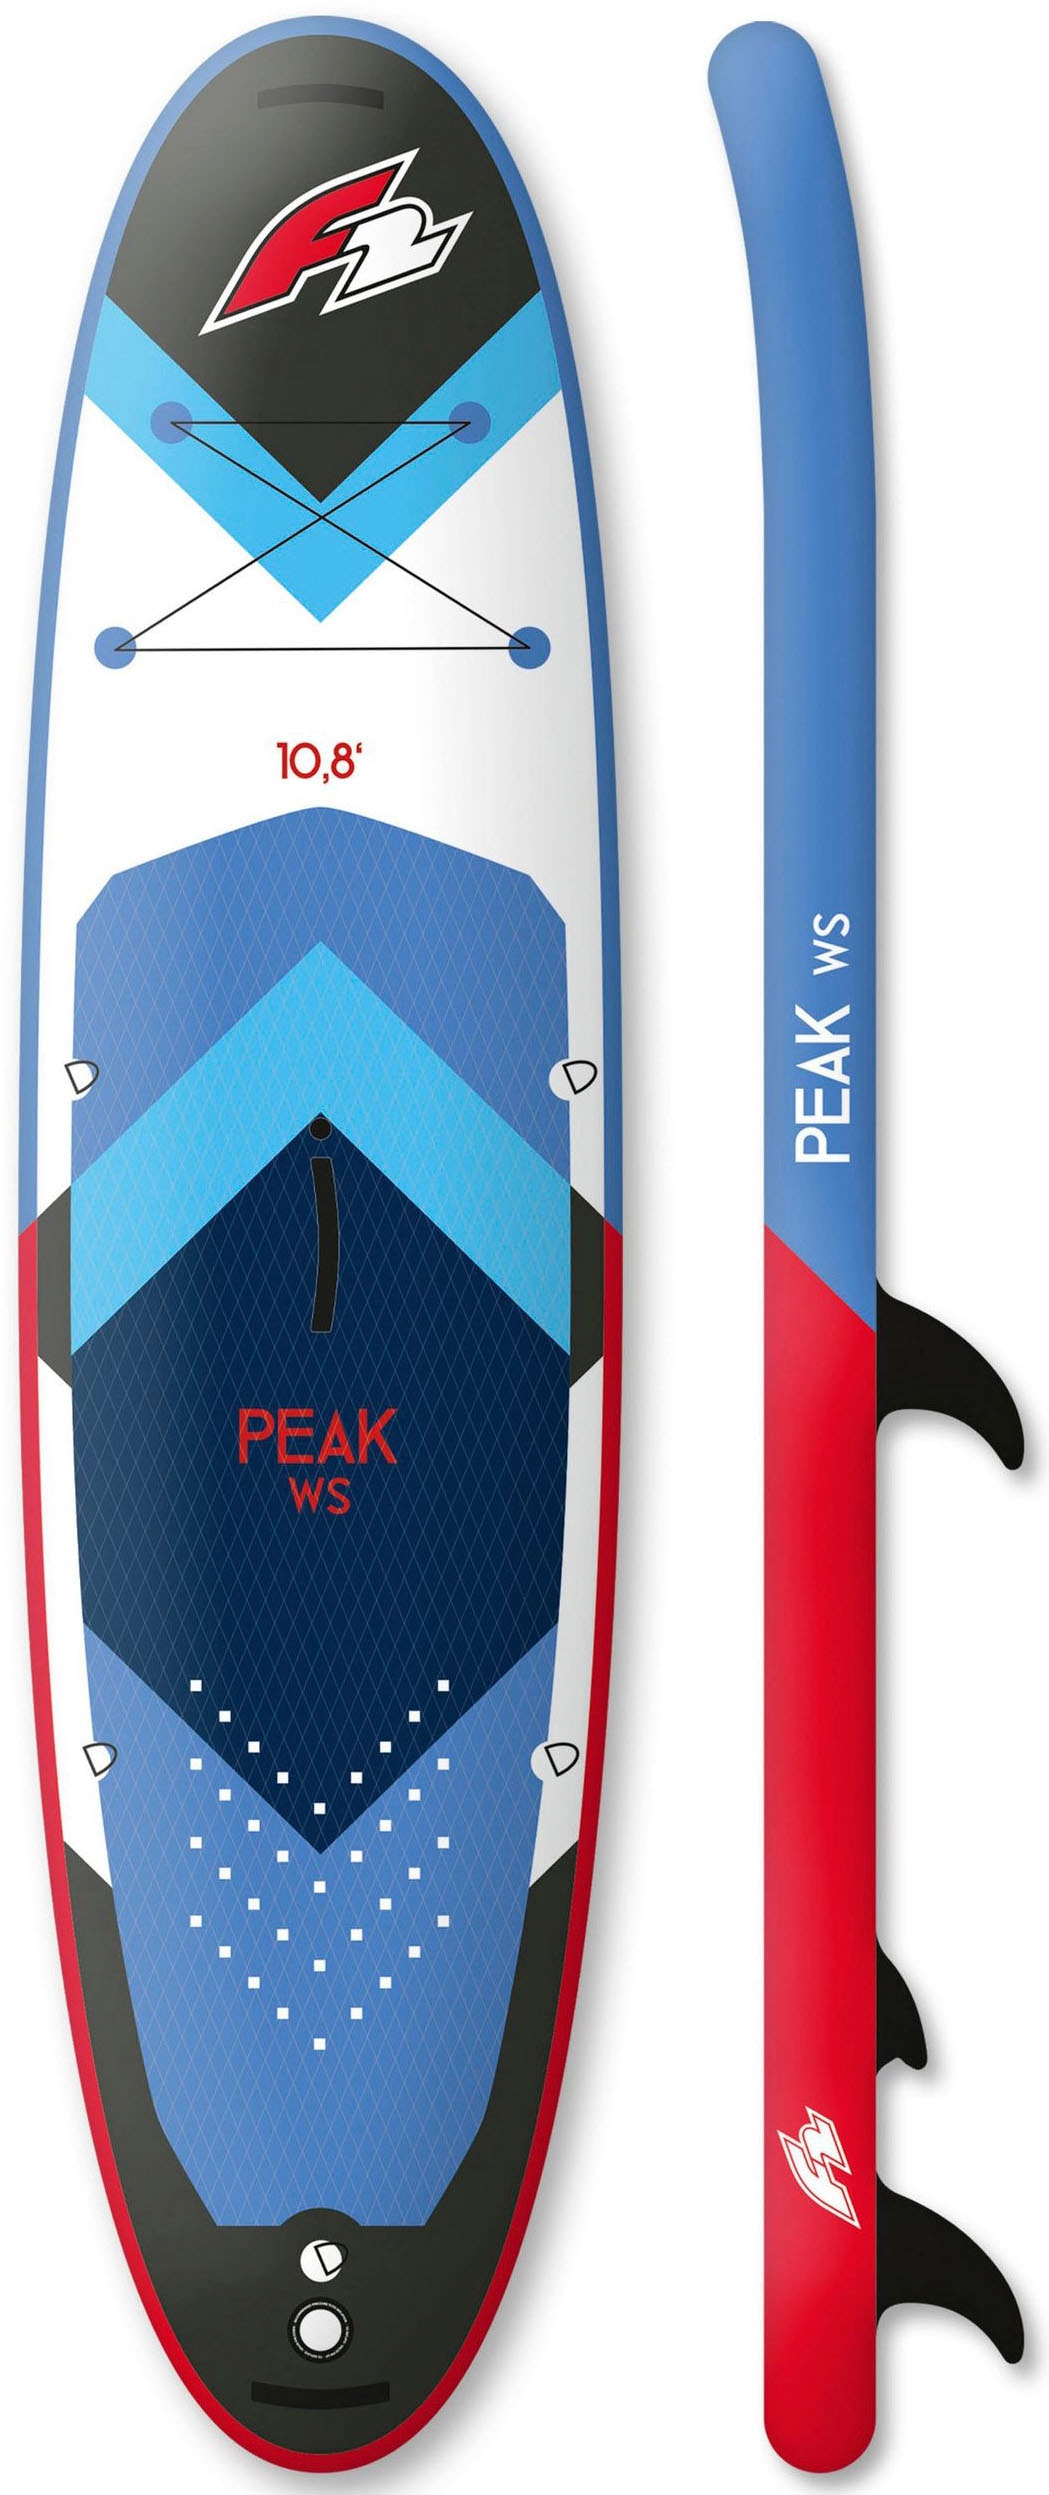 F2 Windsurfboard Set Pumpe, (Set, Paddel, Transportrucksack Checker mit mit tlg., und Segel) bei 4,5m²«, Rigg 10,8 WS 16 »Peak